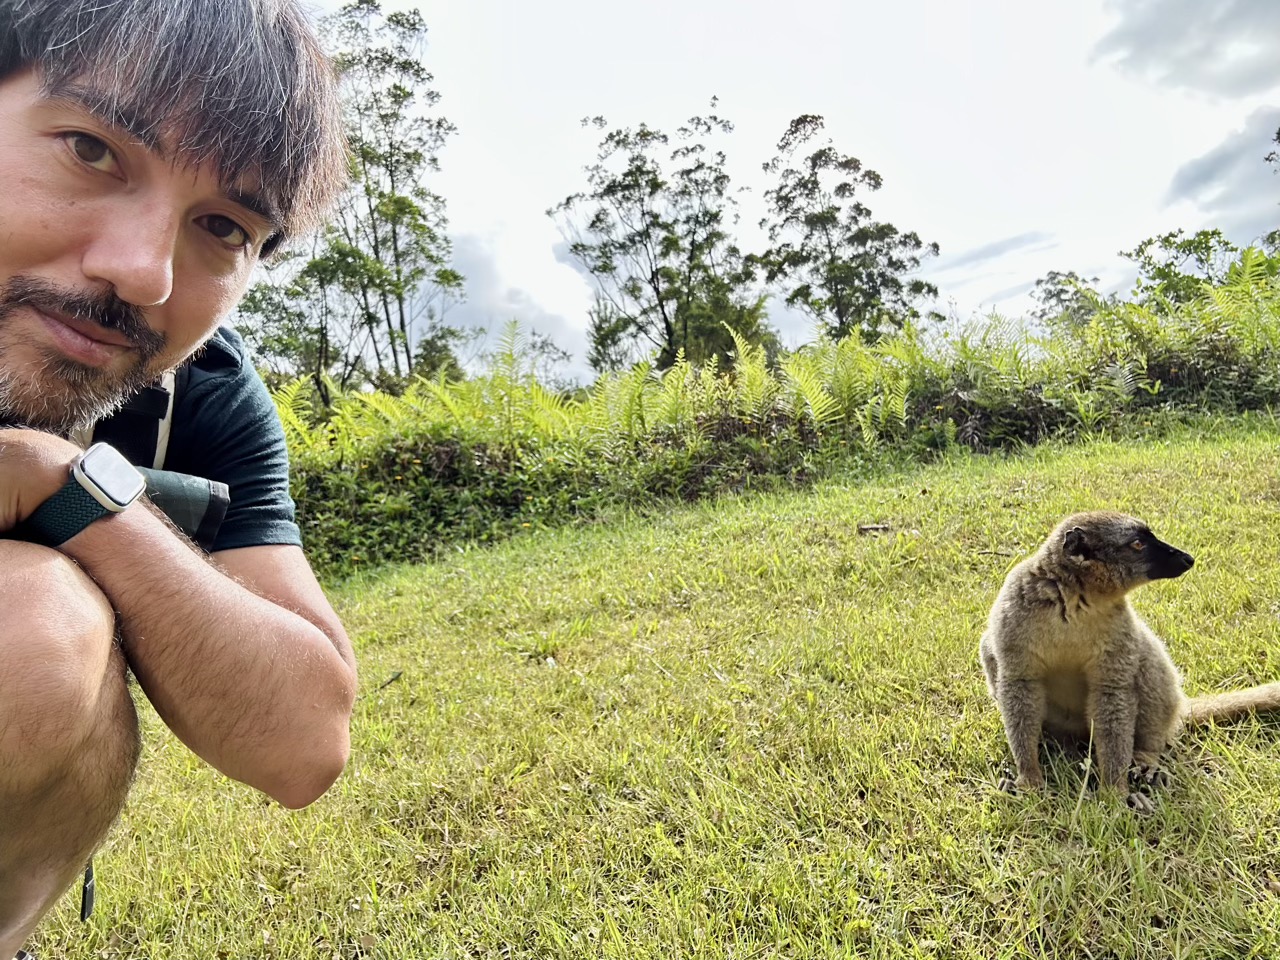 Selfie with a lemur, part i